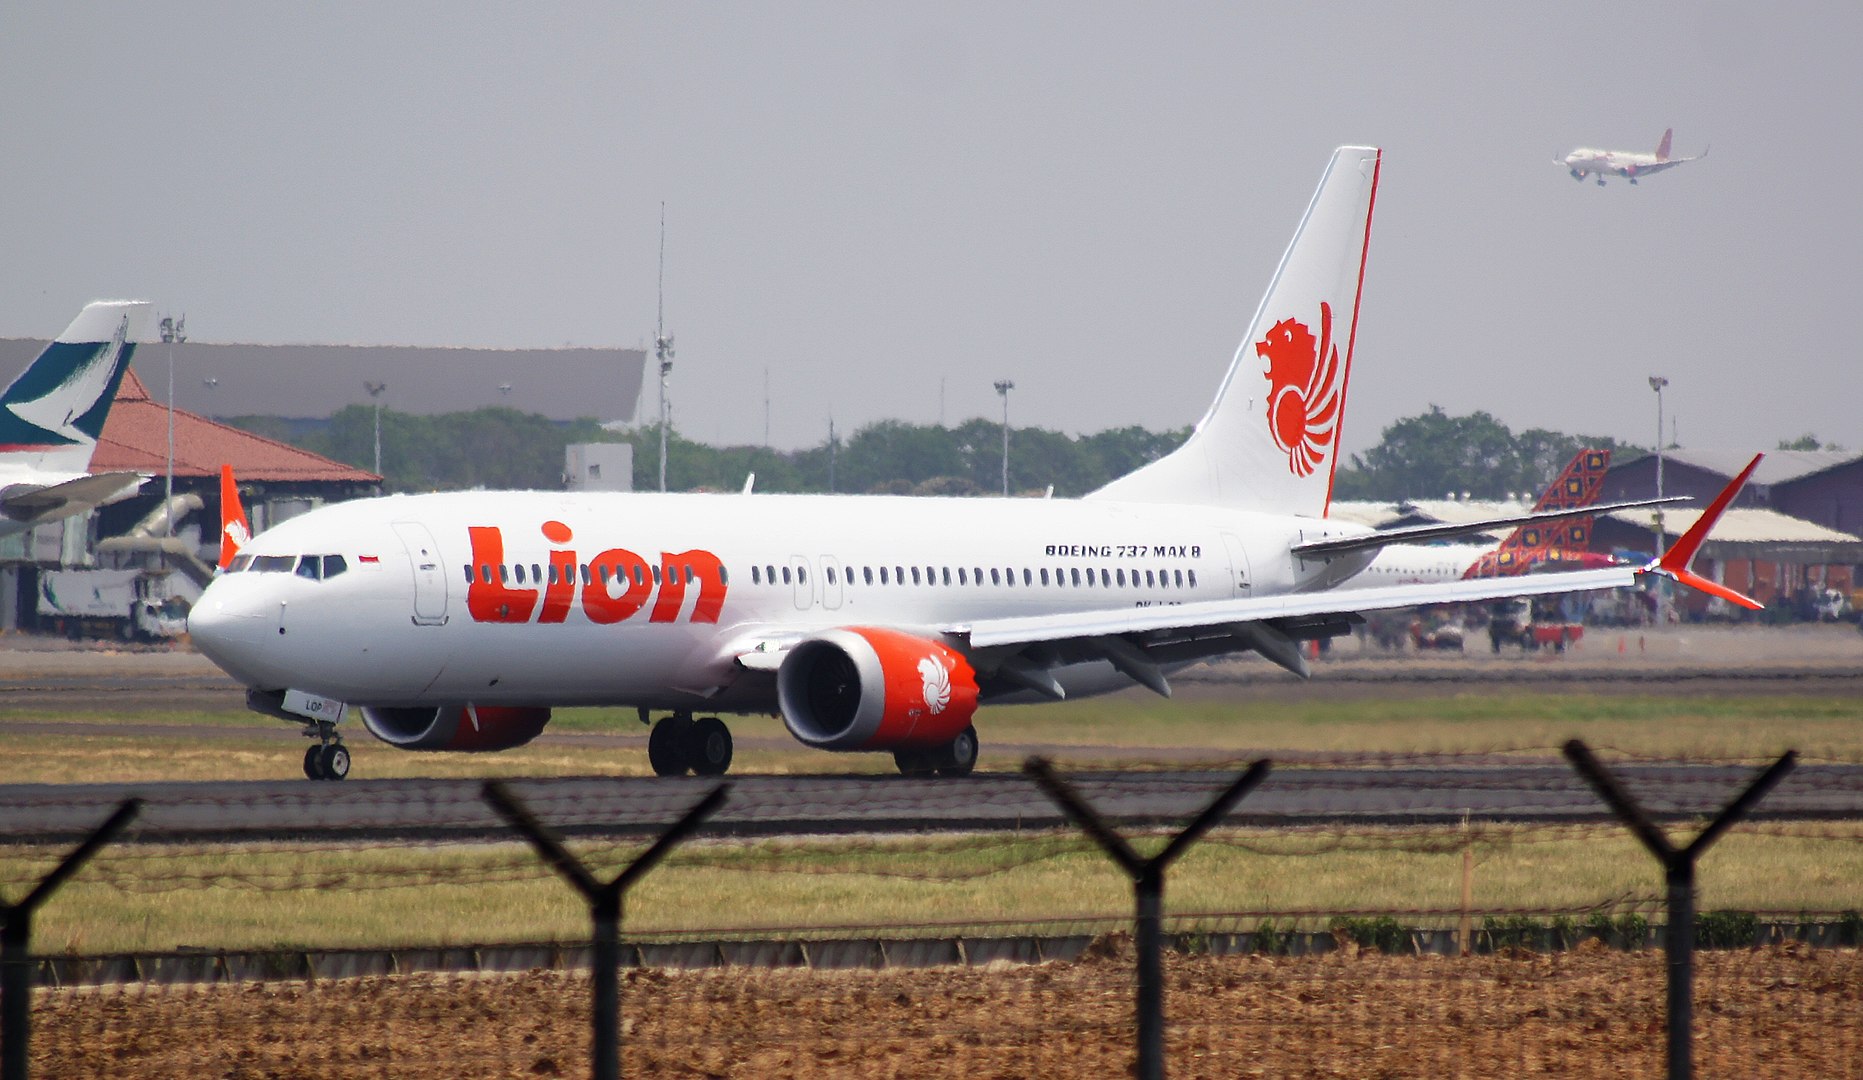 Pesawat Lion Air PK-LPQ yang terlibat kecelakaan pada penerbangan 610